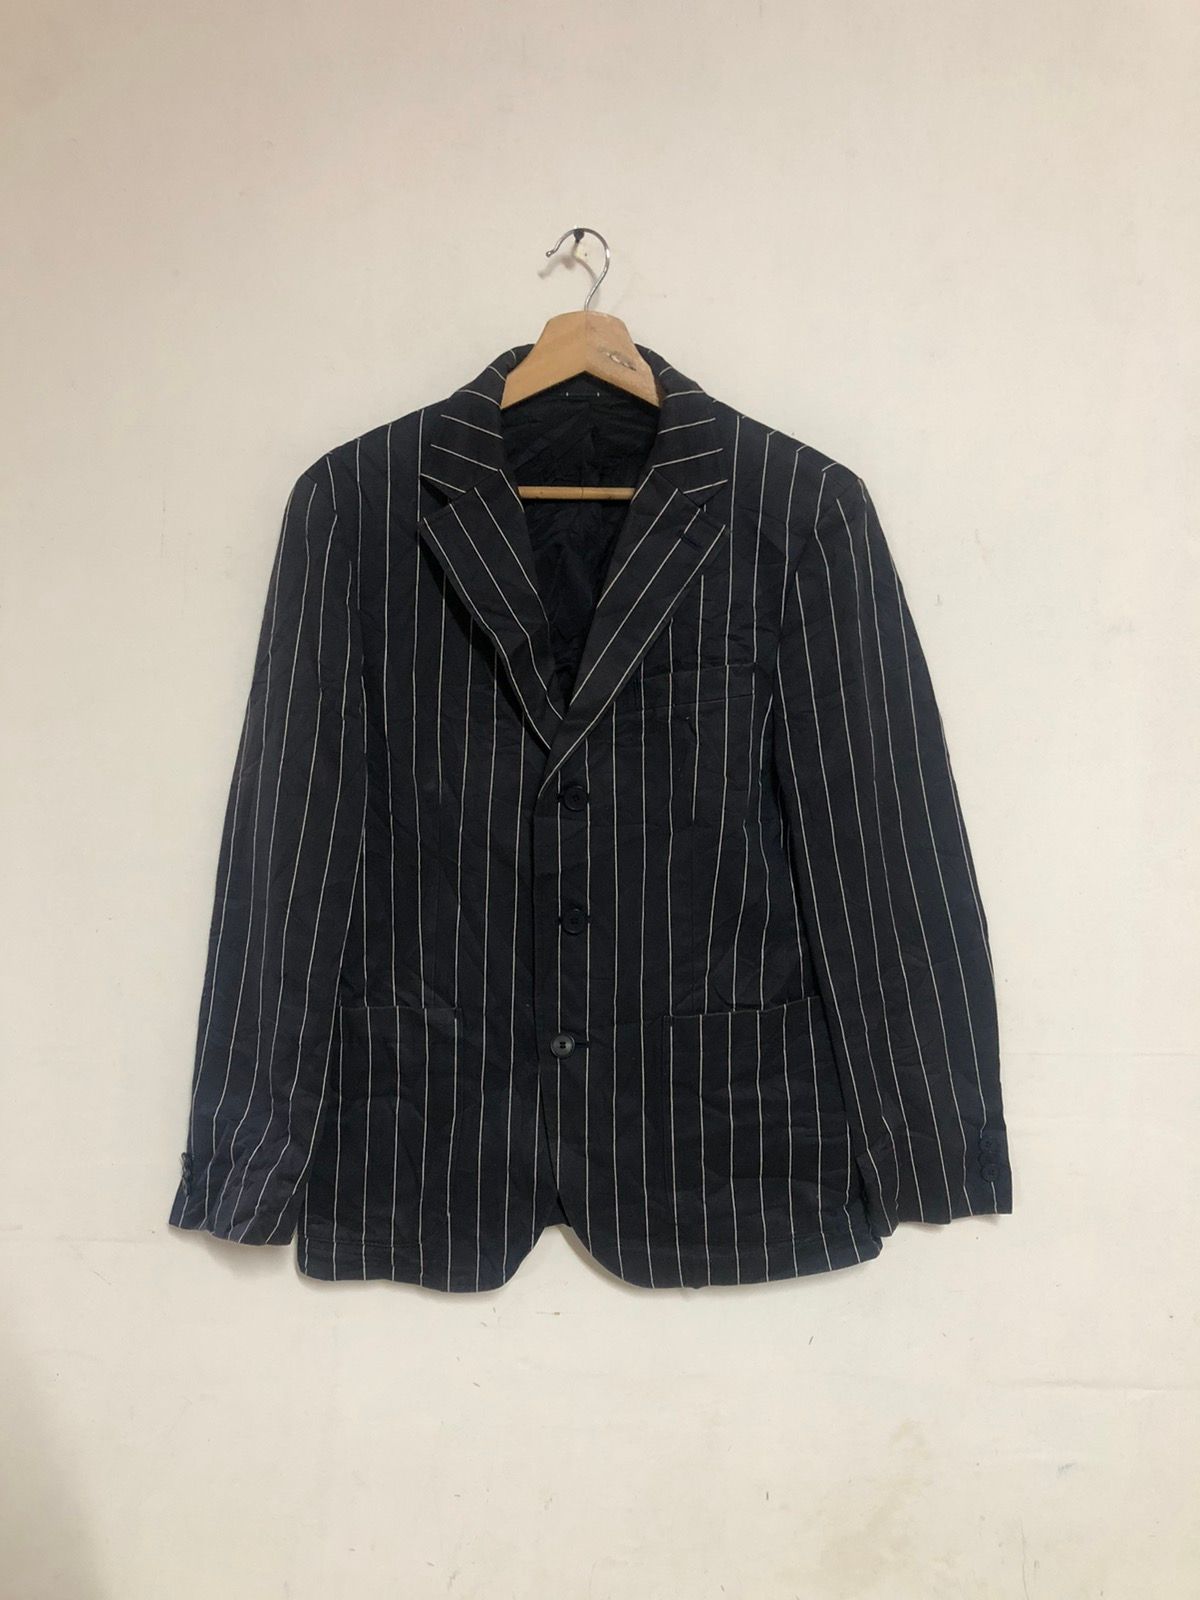 Lacoste Vintage Lacoste blazer 3 button Japan | Grailed